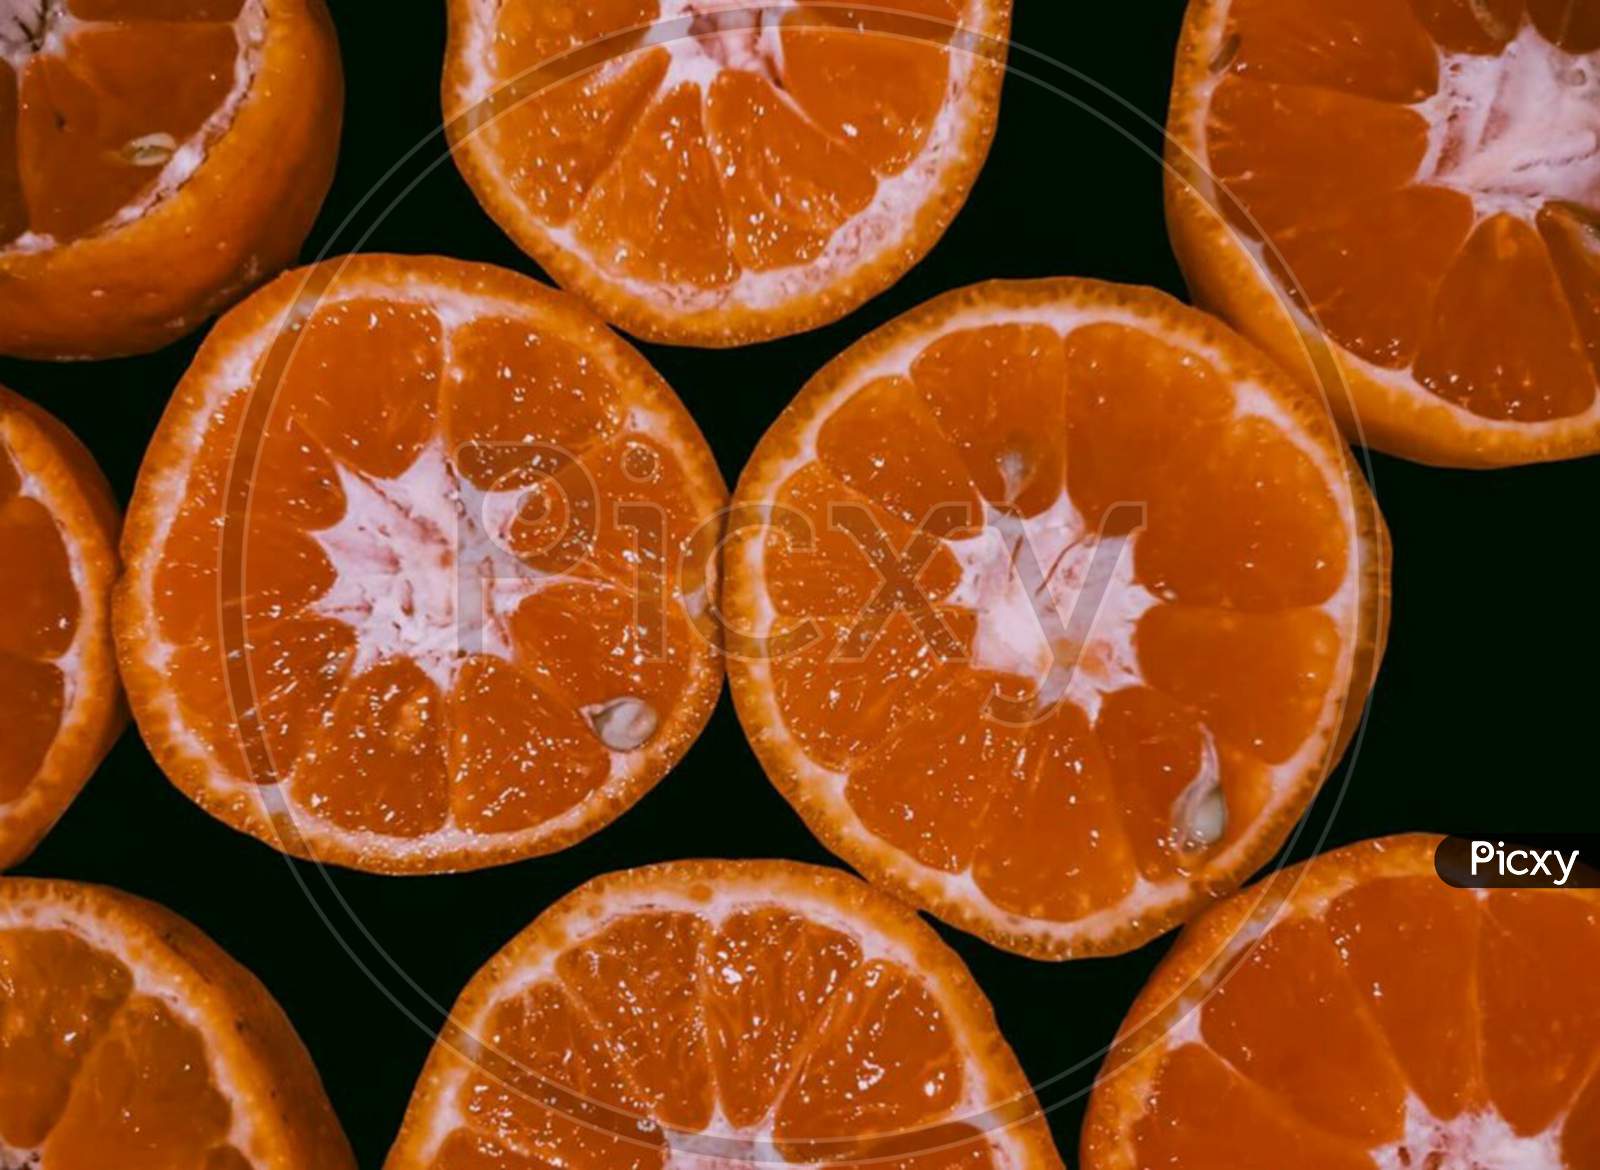 Orange oranges slices served